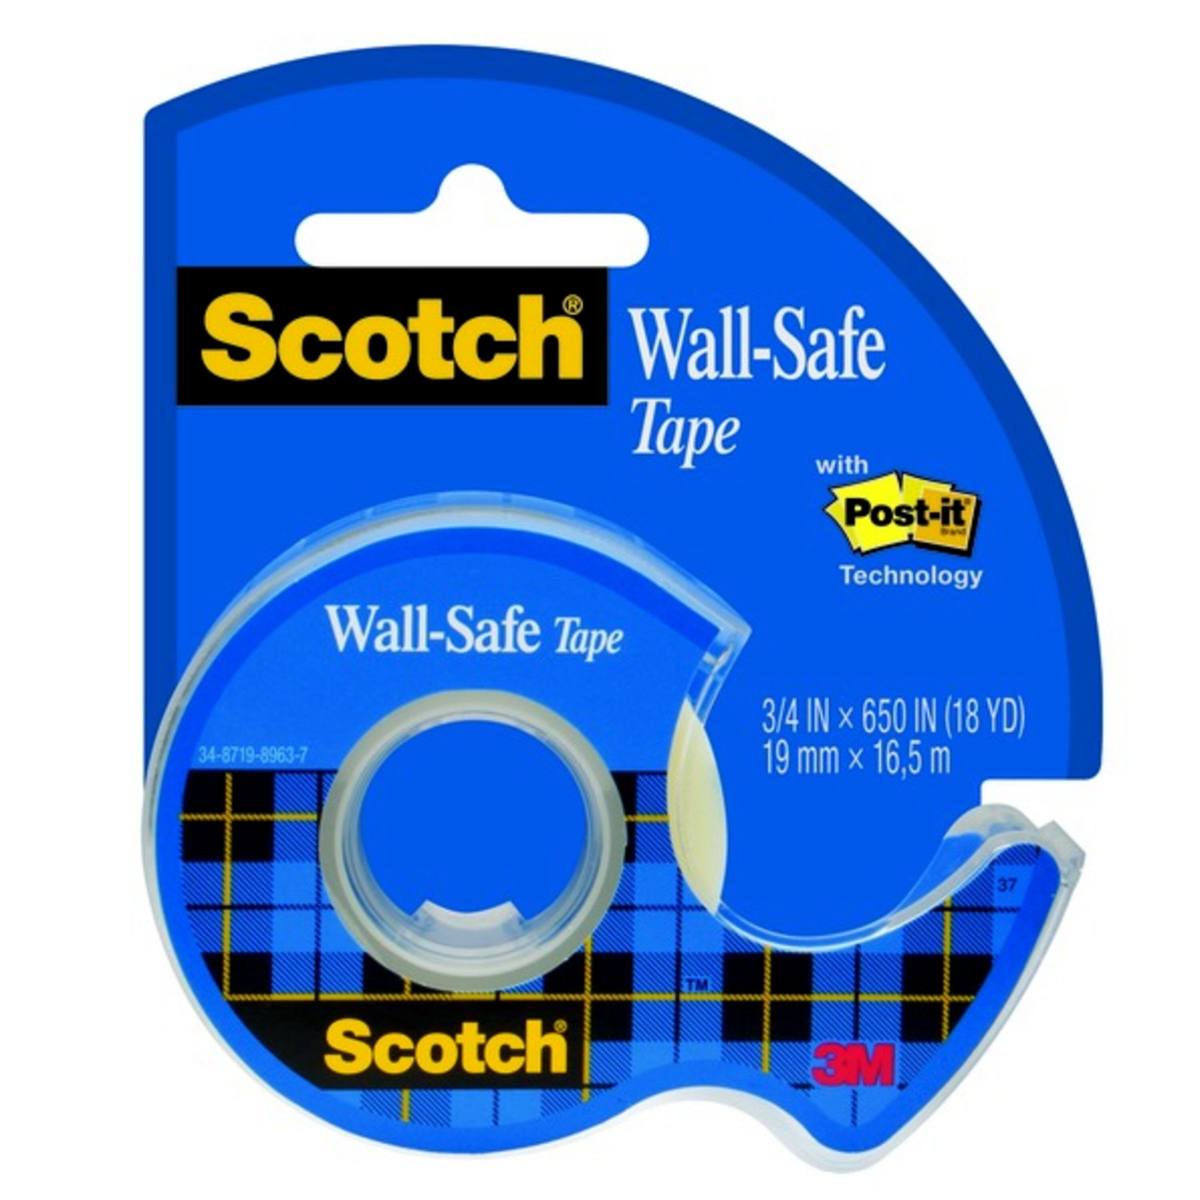 3M Scotch Wall-Safe plakband 19 mm x 16,5 m 1 rol, 1 maxidispenser